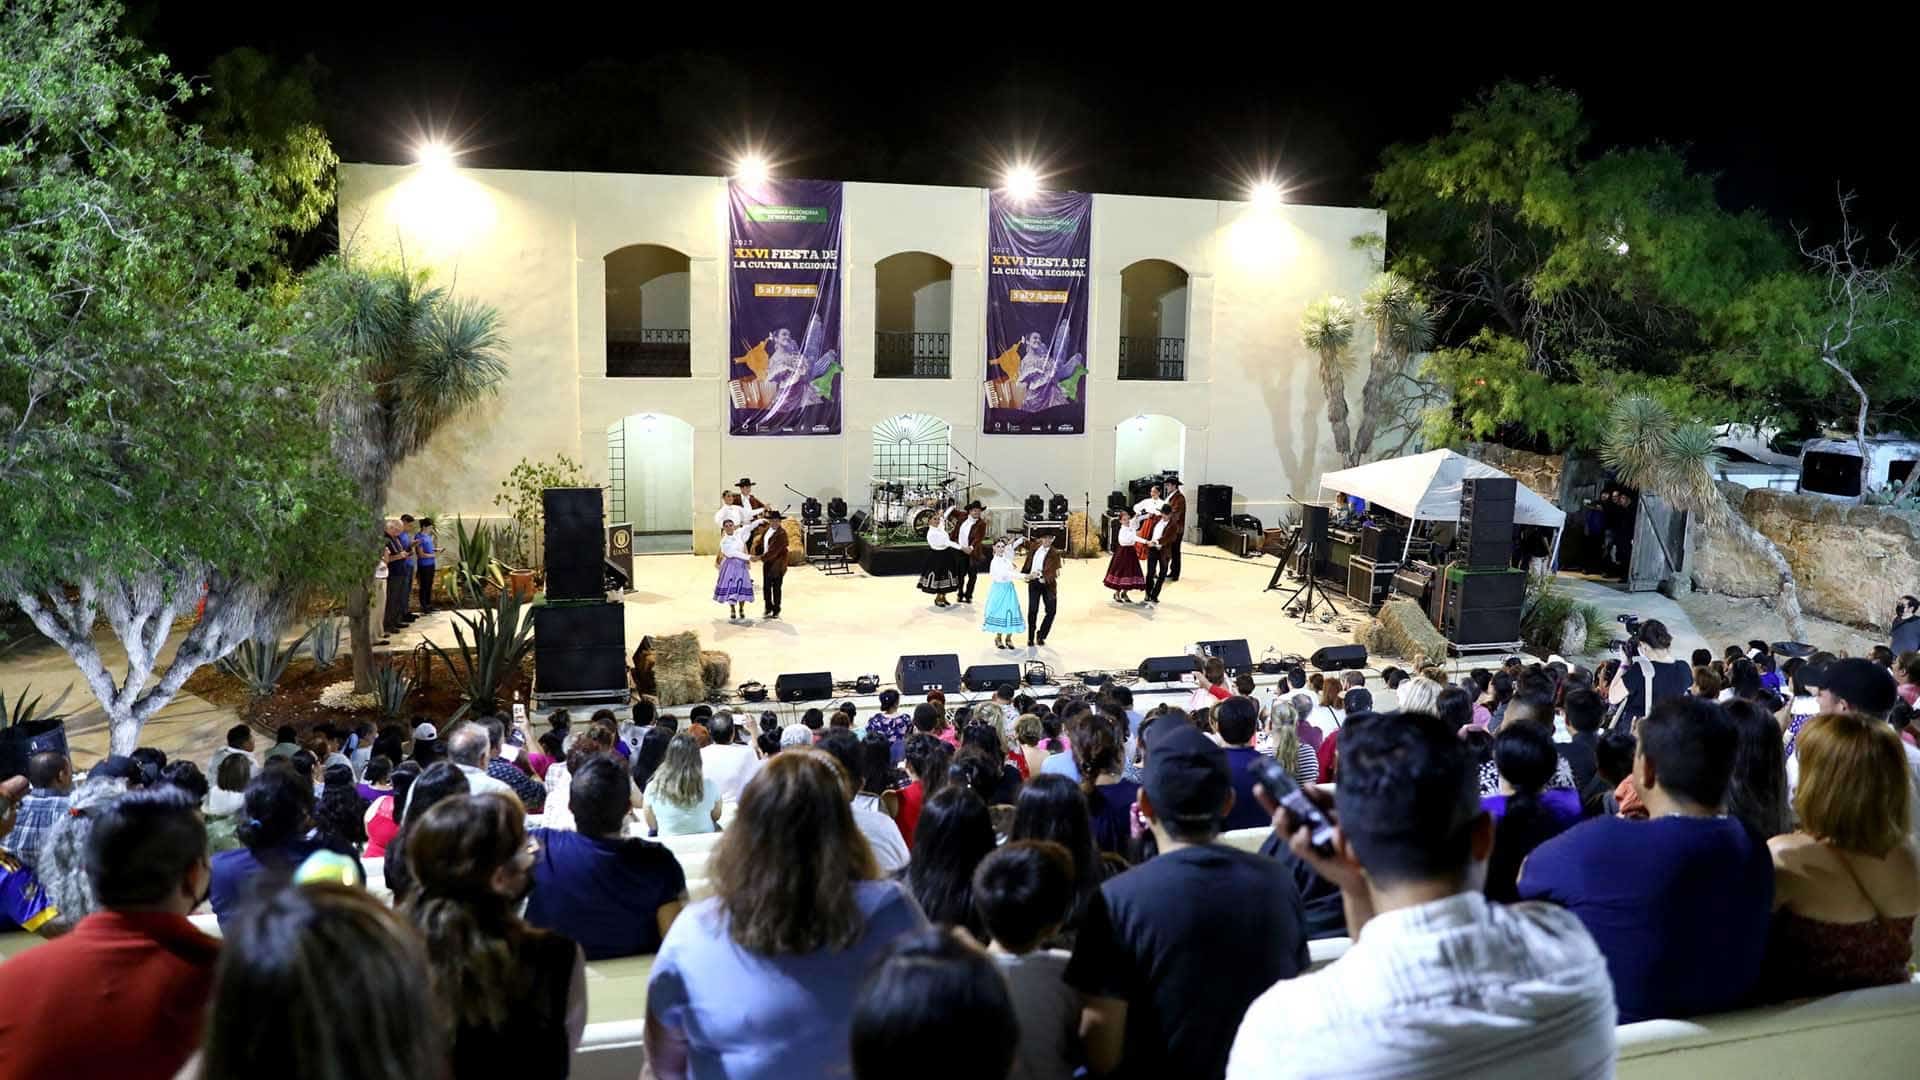 Anuncia Hacienda San Pedro Fiesta de la Cultura Regional